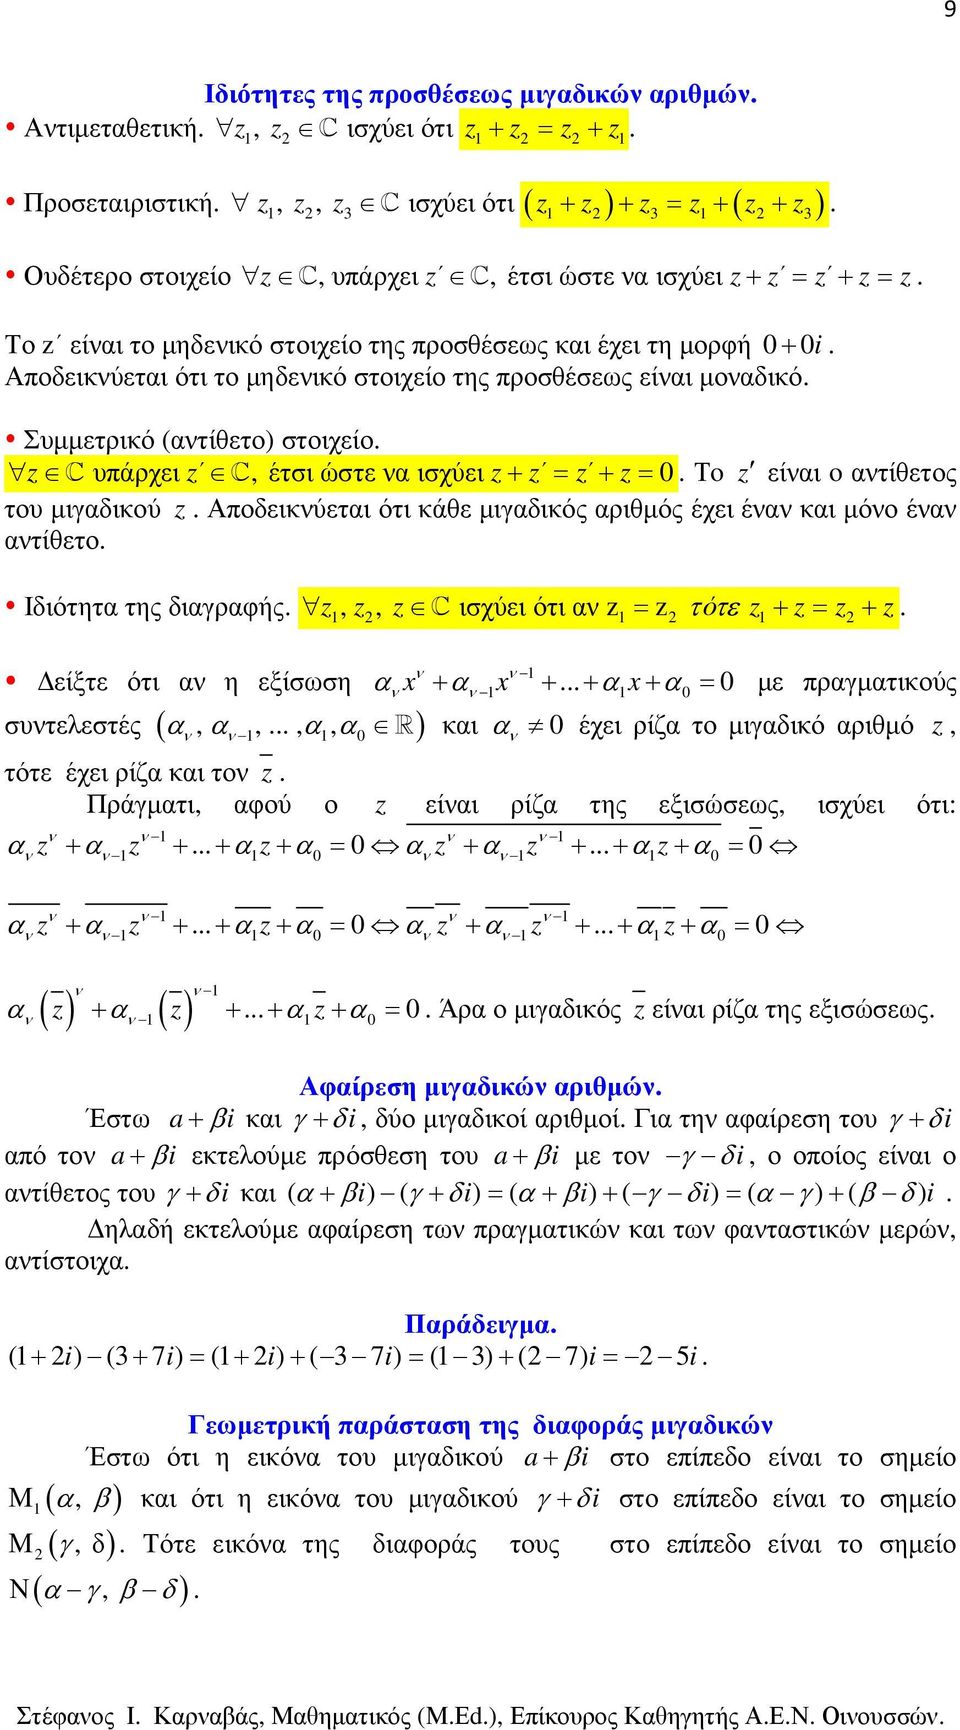 είαι o ατίθετος του µιγαδικού Αποδεικύεται ότι κάθε µιγαδικός αριθµός έχει έα και µόο έα ατίθετο Ιδιότητα της διαγραφής,, C ισχύει ότι α = τότε + = + είξτε ότι α η εξίσωση συτελεστές ( α, α,, α, α )